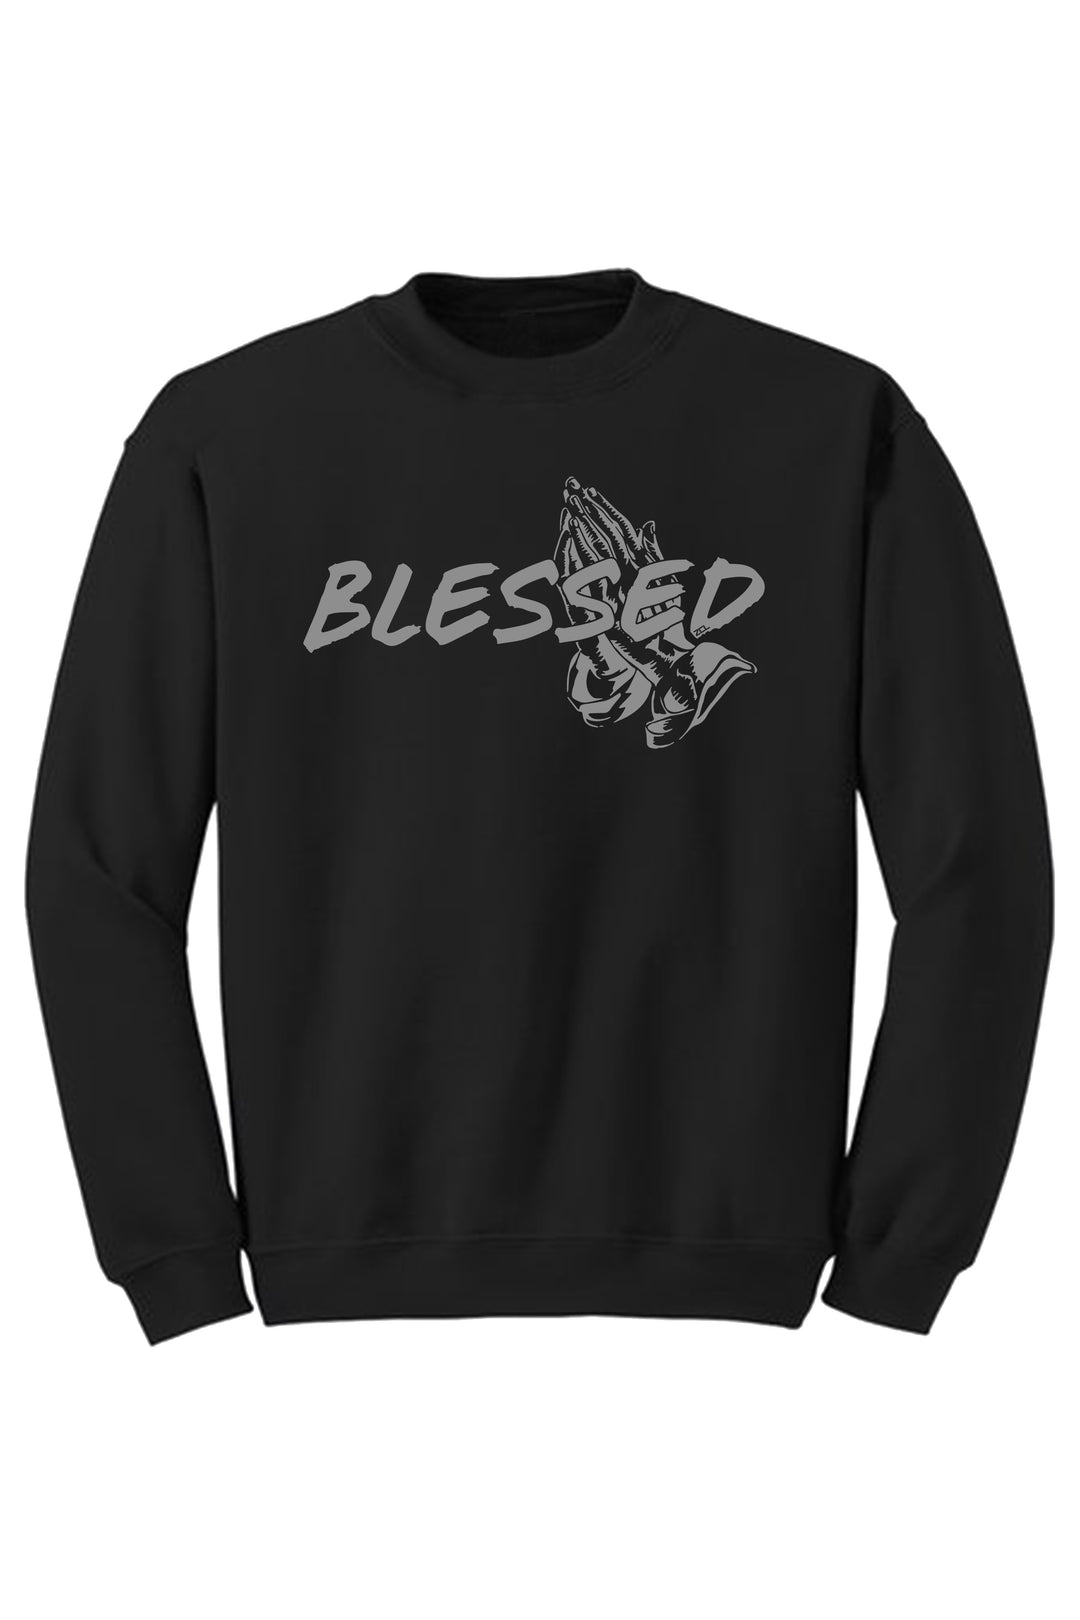 Blessed Crewneck Sweatshirt (Grey Logo) - Zamage